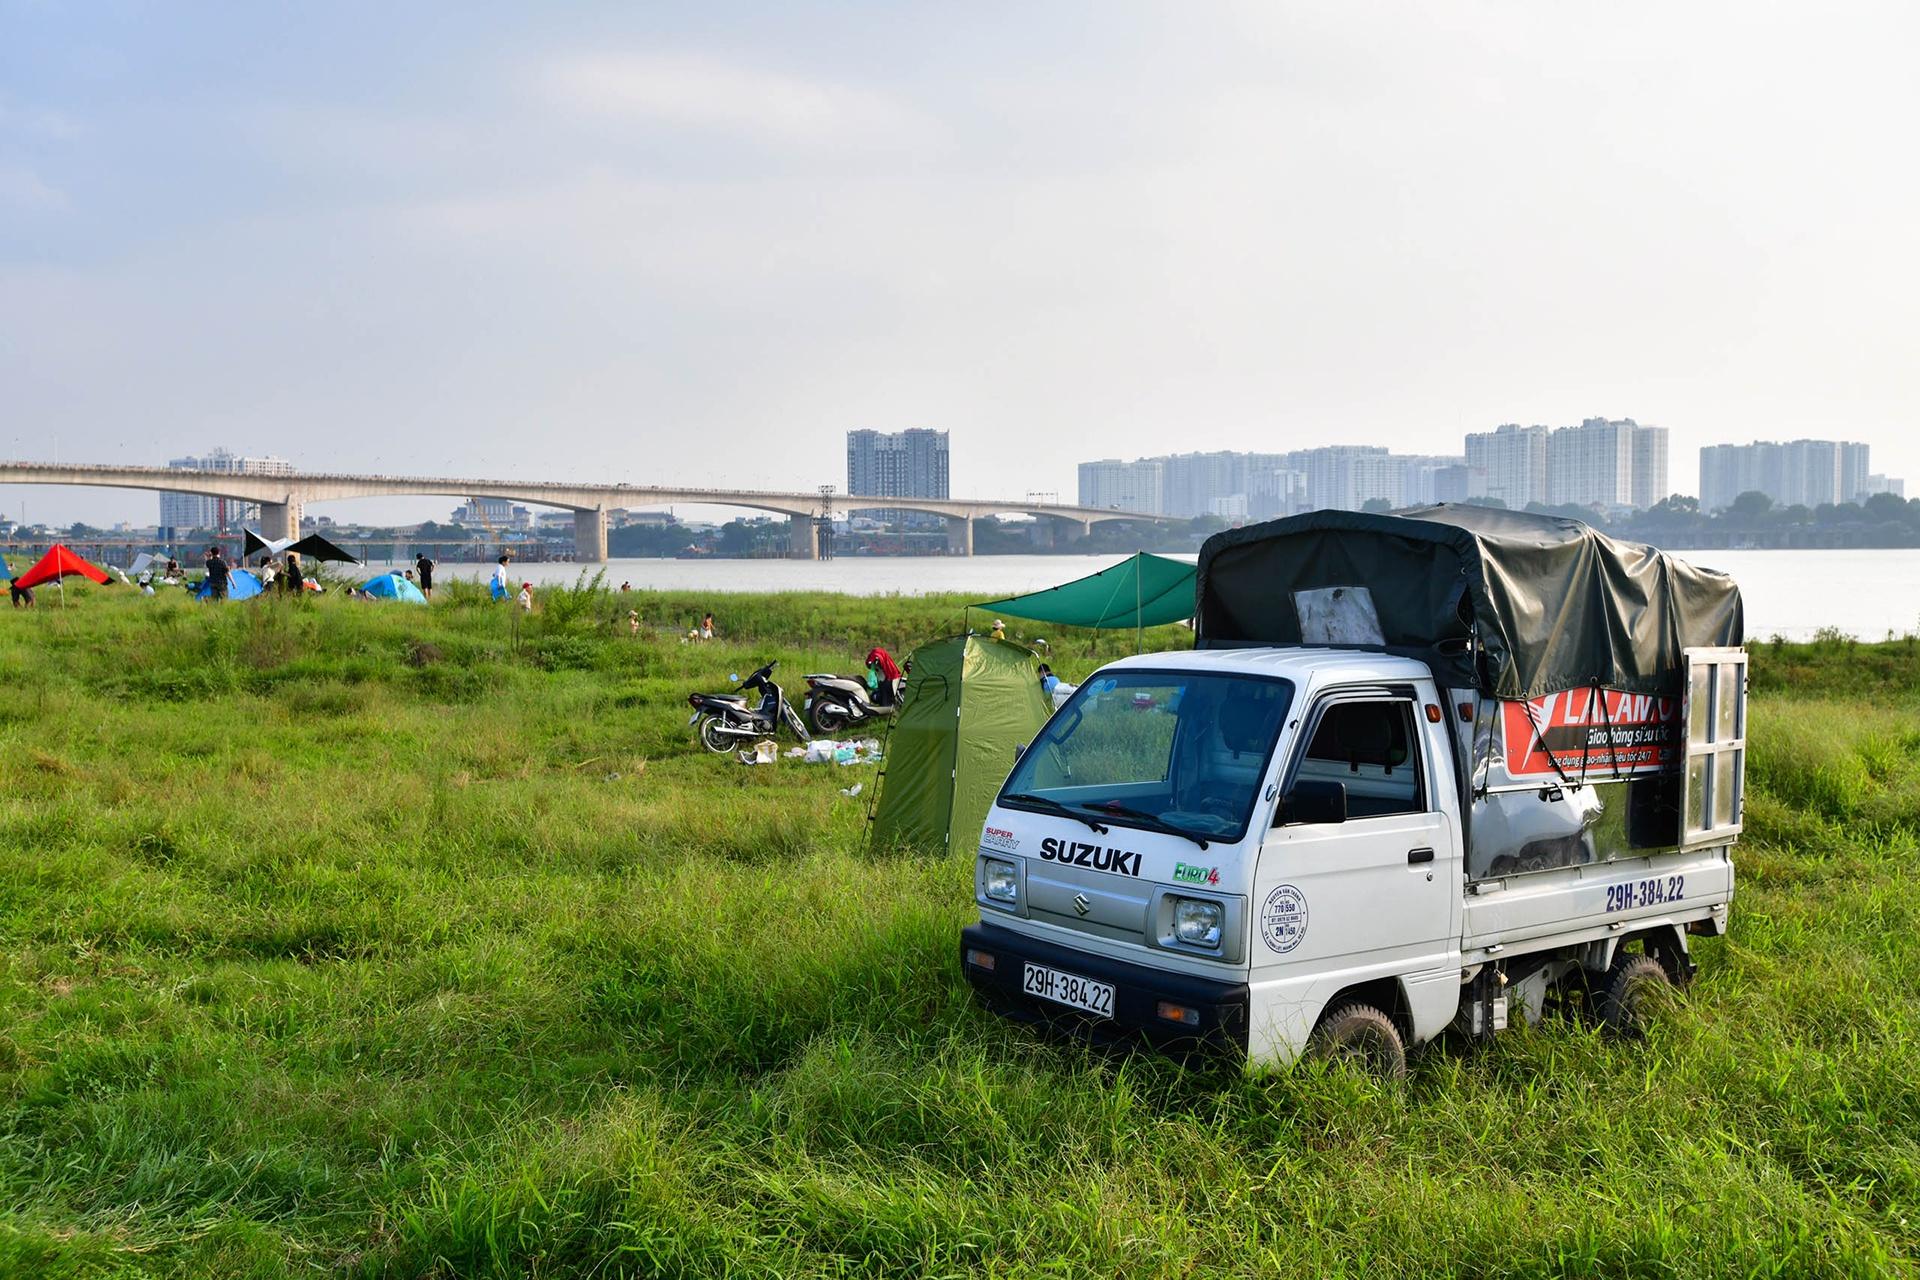 Hàng trăm người dựng trại cuối tuần bên bờ sông Hồng - 6